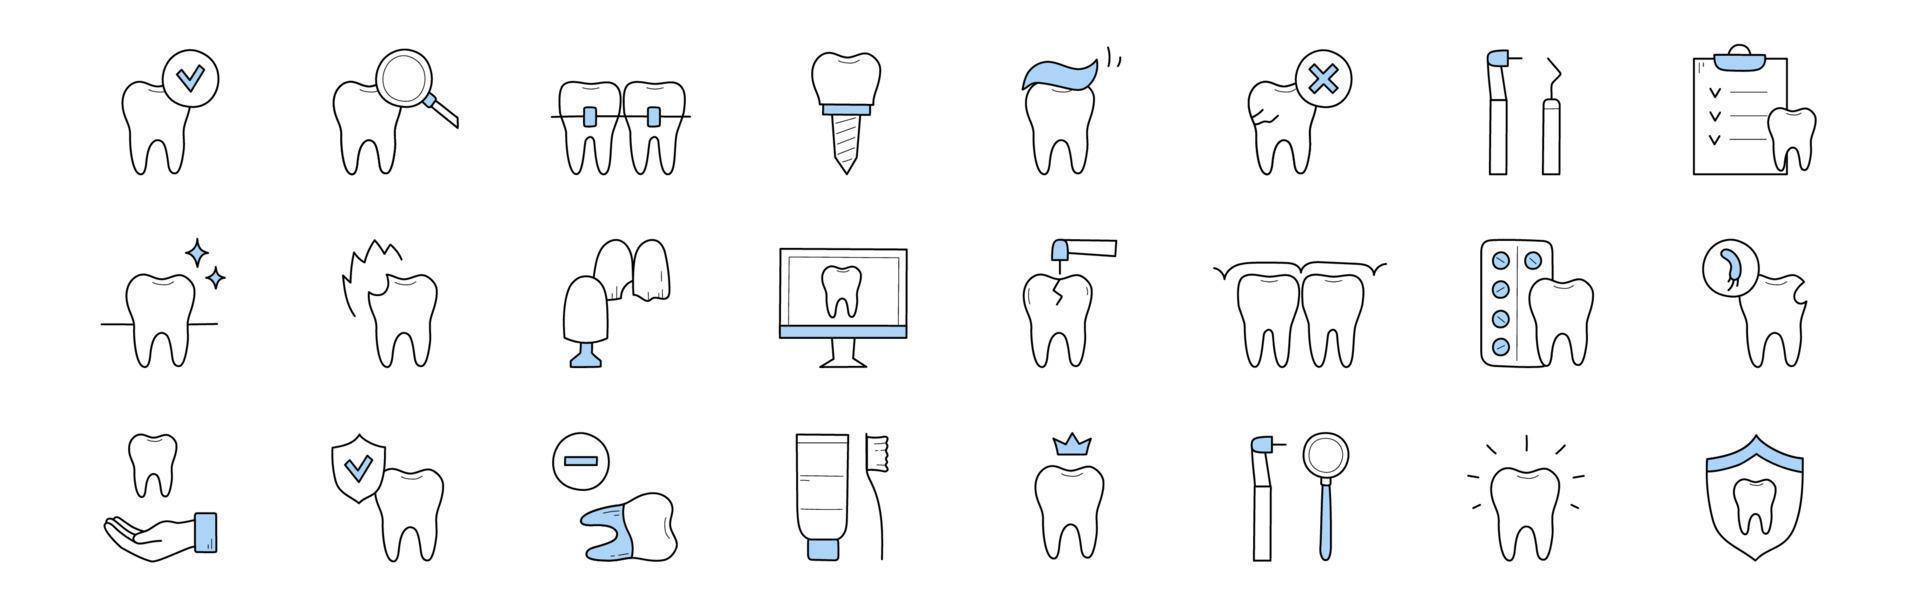 iconos de garabatos de odontología y estomatología, conjunto de signos vector